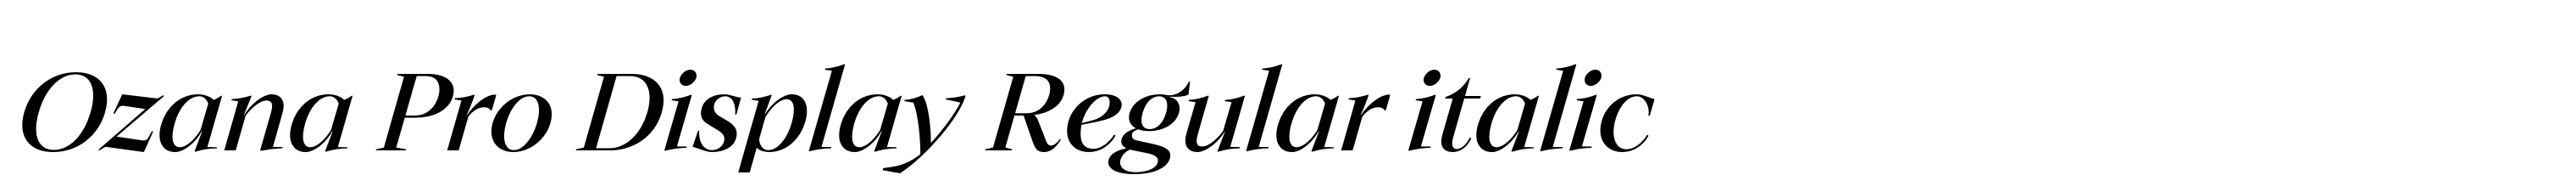 Ozana Pro Display Regular italic